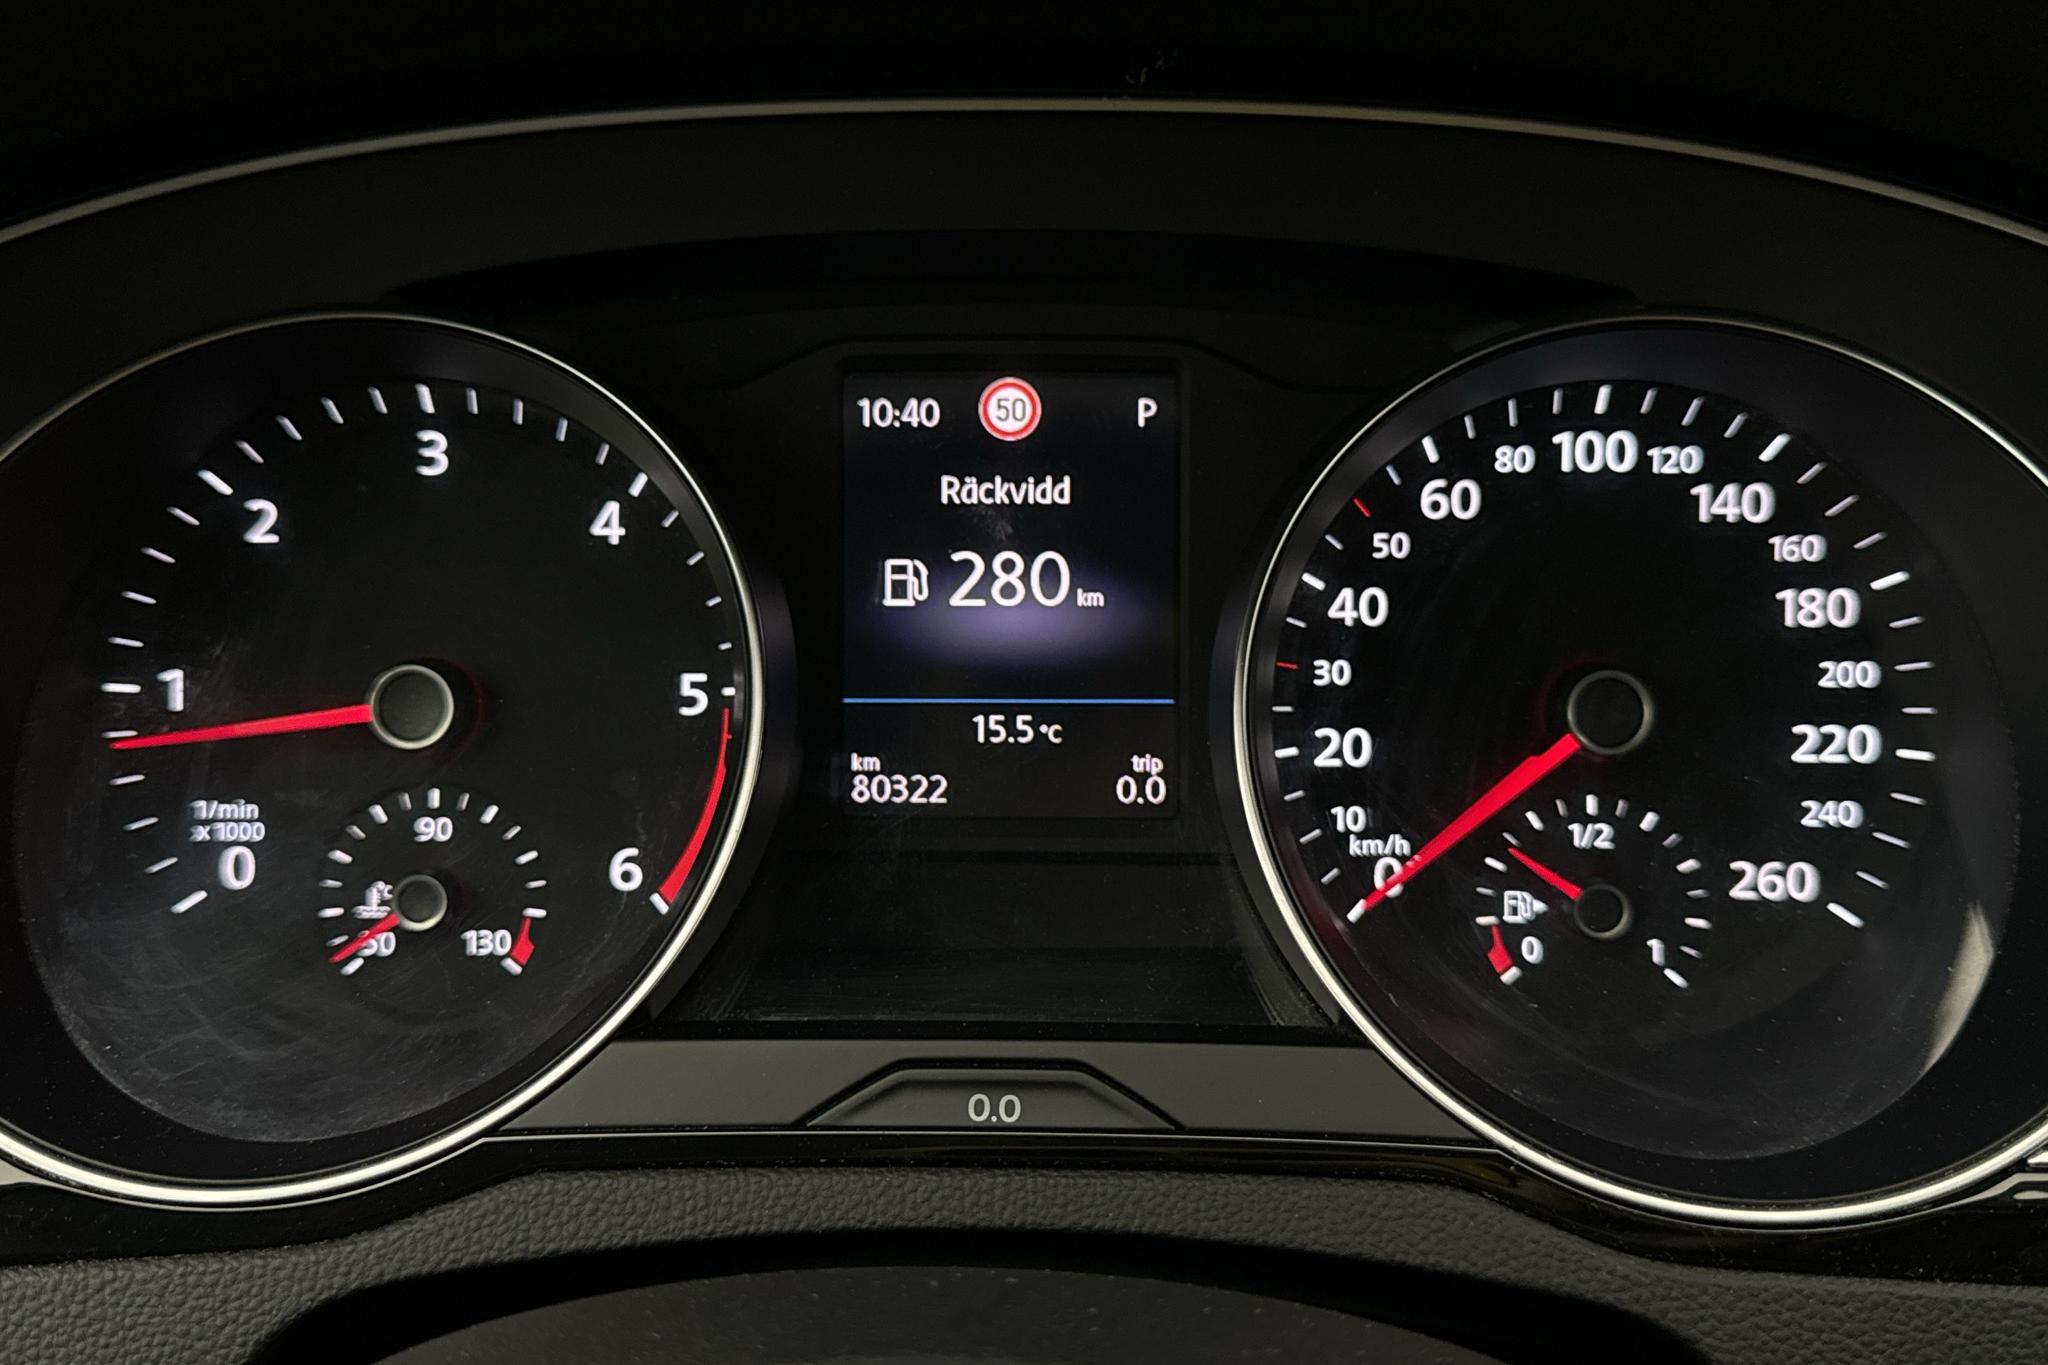 VW Passat 2.0 TDI Sportscombi 4MOTION (190hk) - 80 330 km - Automaattinen - musta - 2020